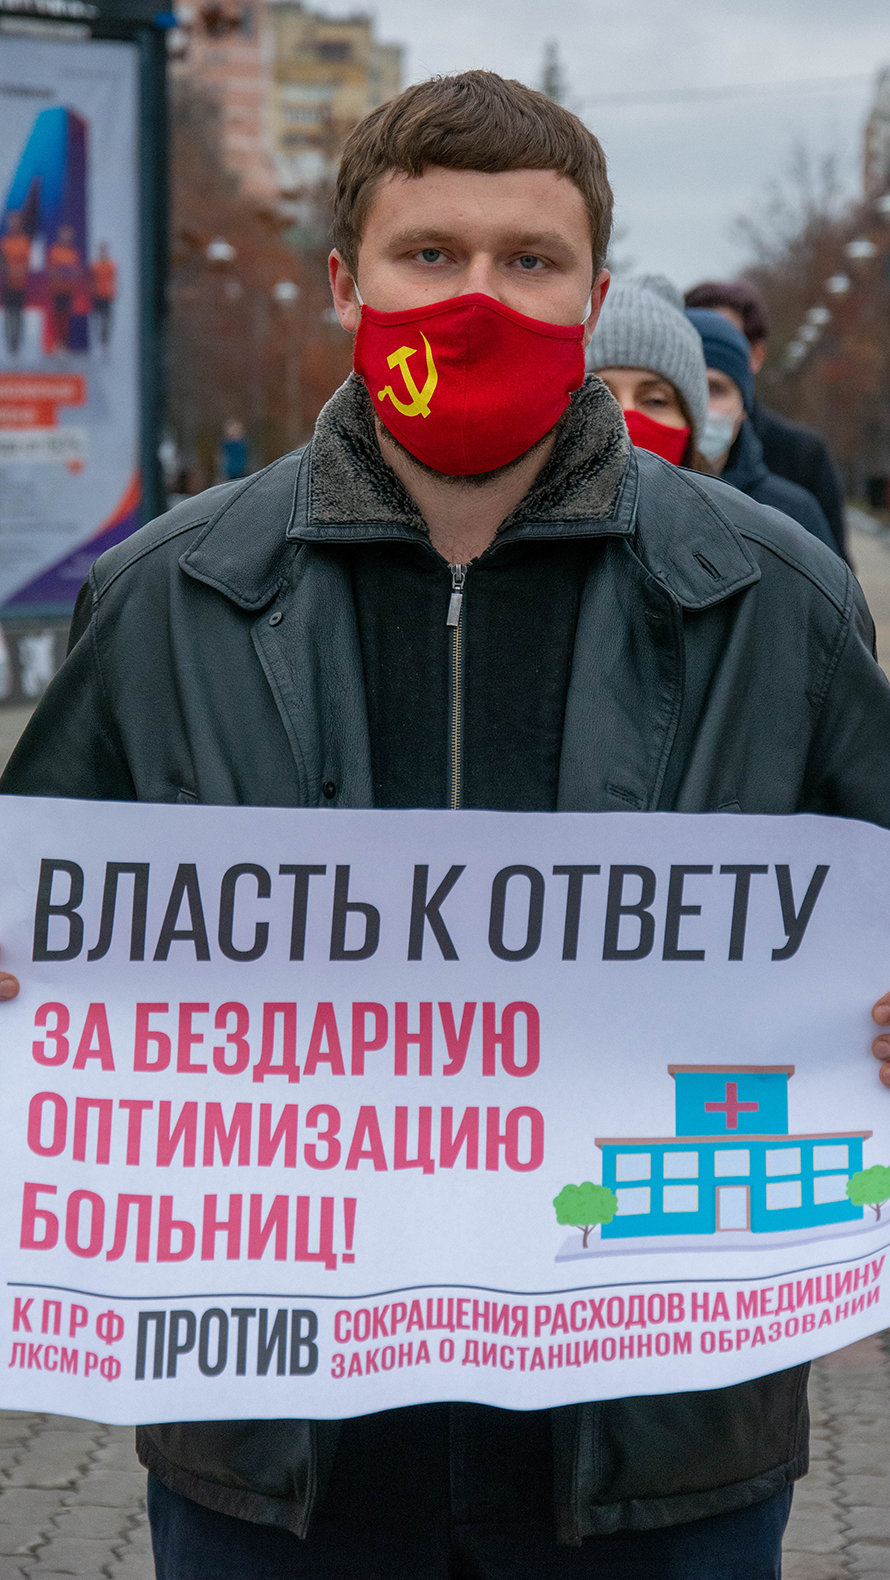 Пикеты против урезания бюджета на социалку в Белгороде